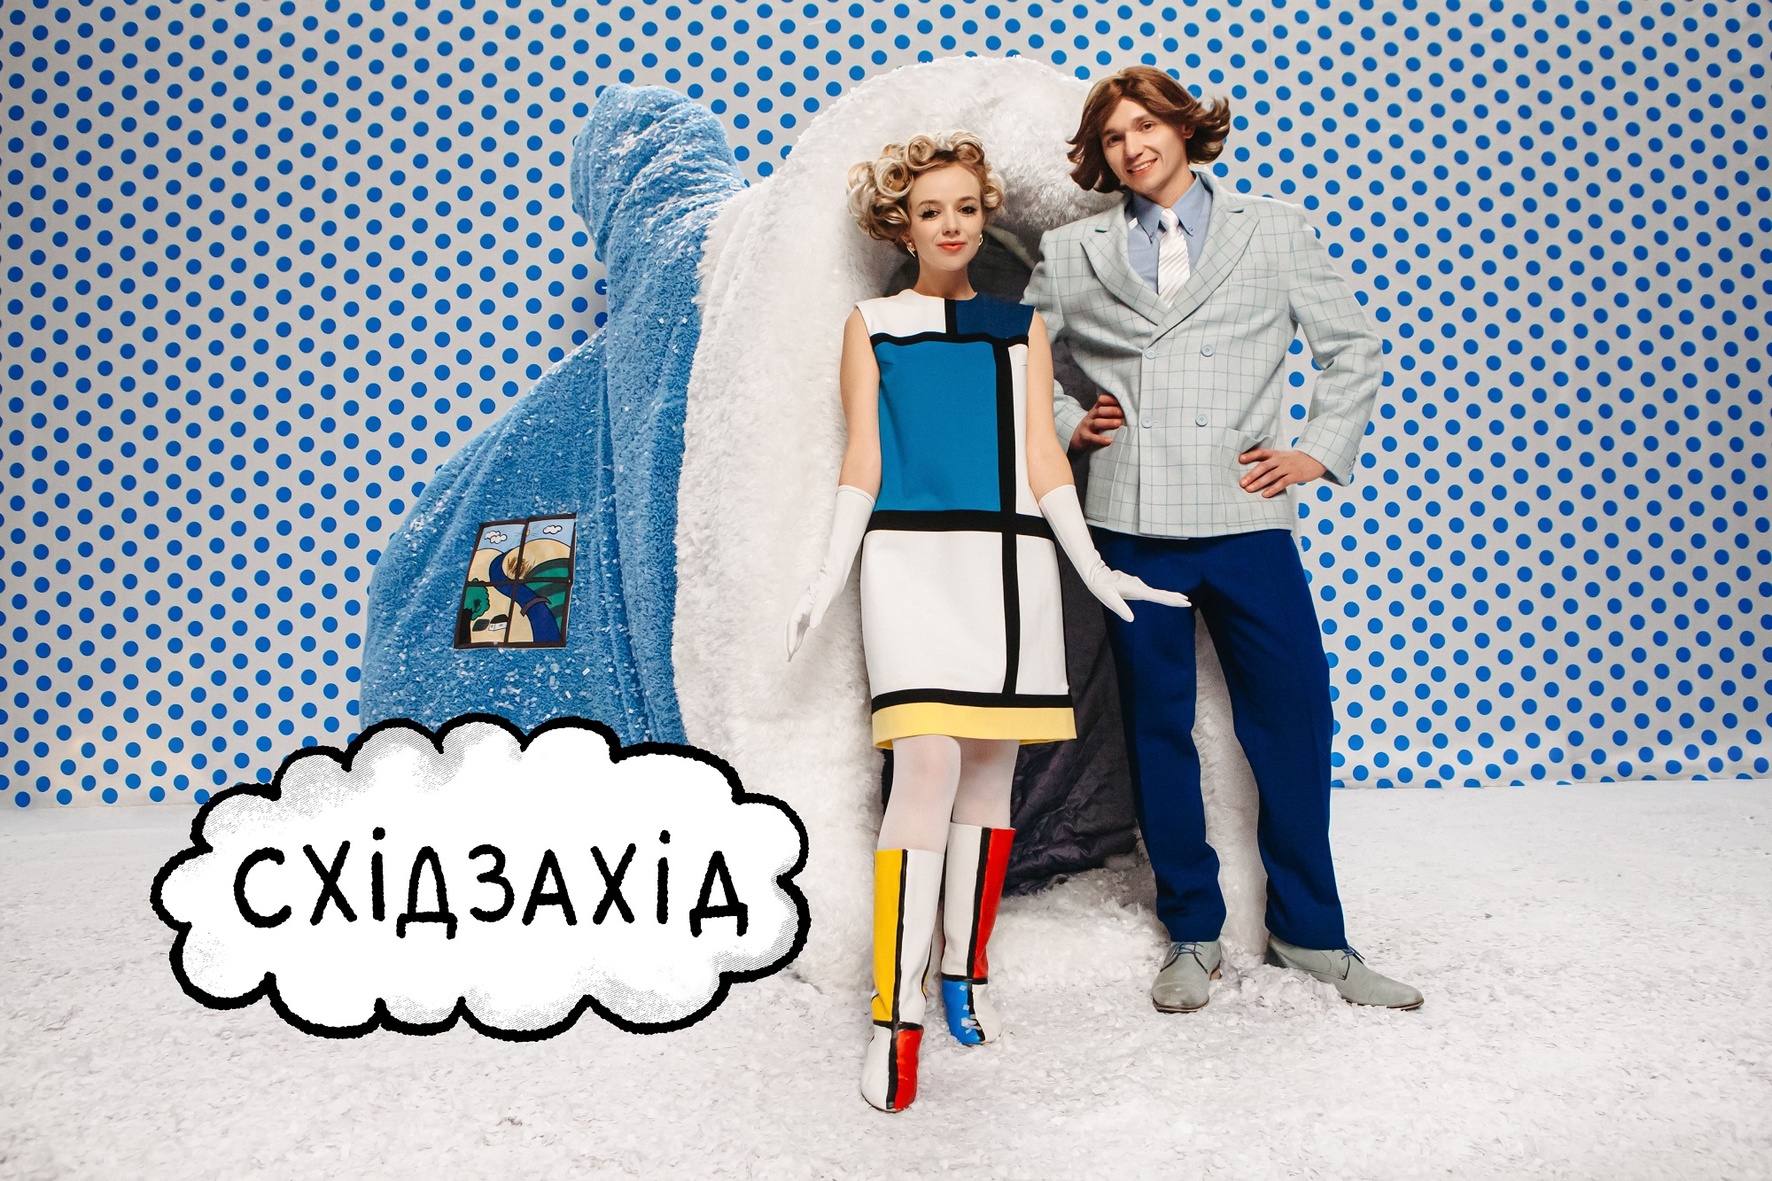 ПРЕМЬЕРА! В вязаных свитерах и с чудными улыбками: "східзахід" - новый дует на украинской сцене!